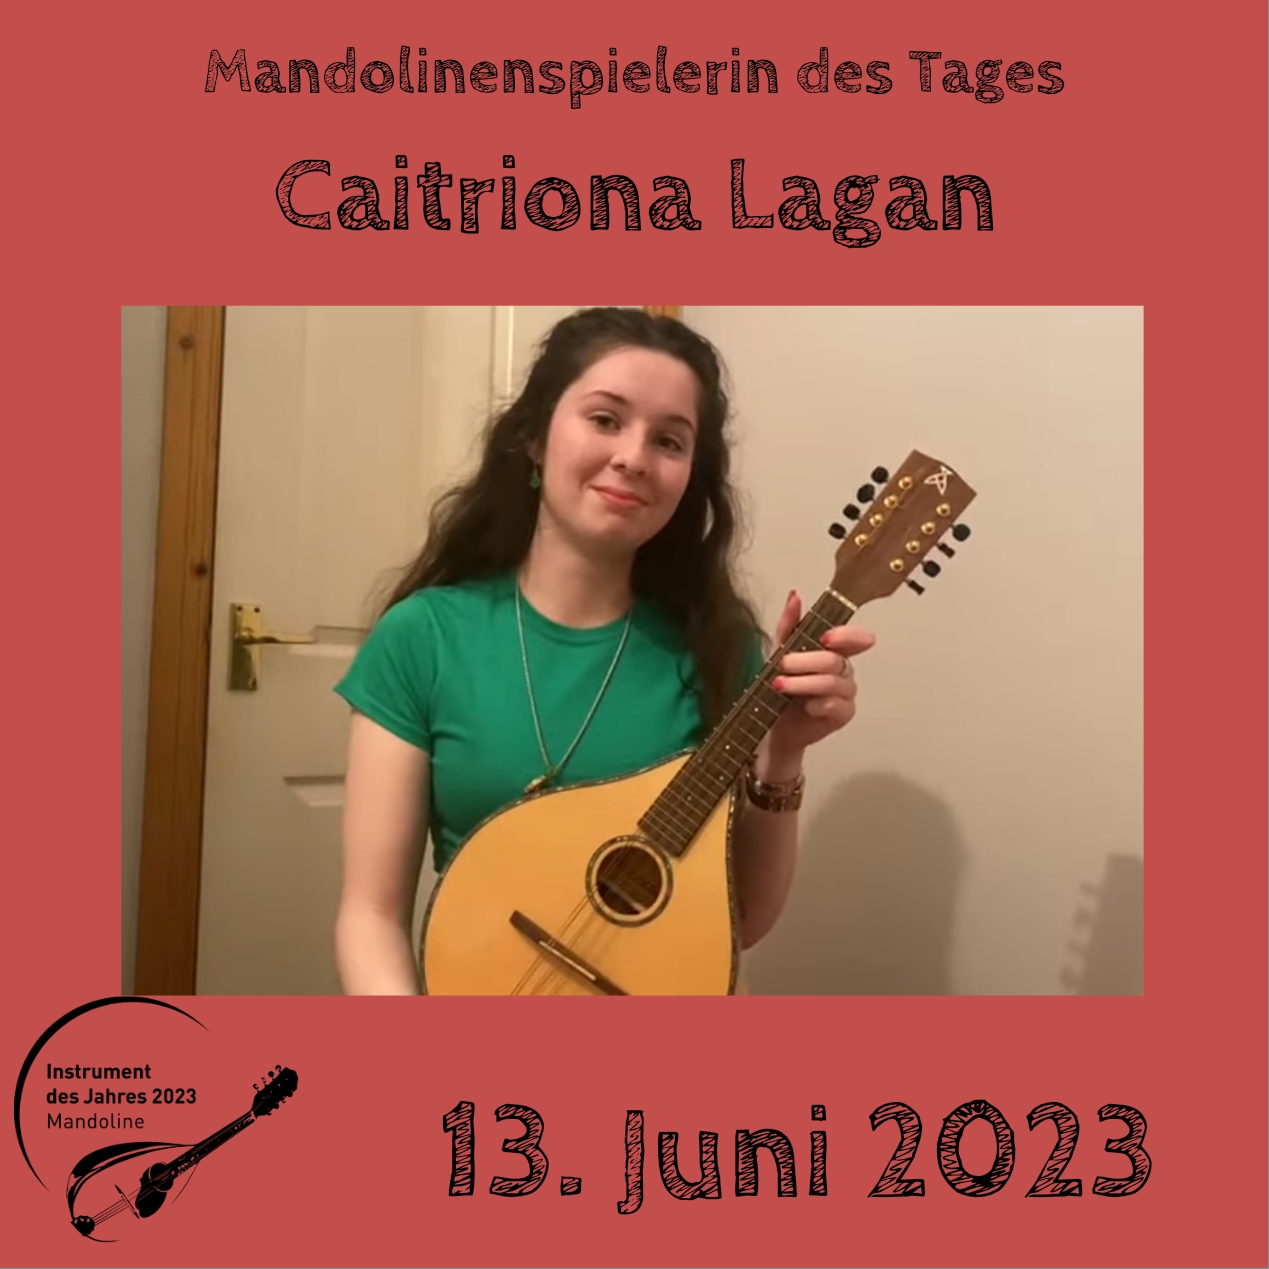 13. Juni - Caitriona Lagan Mandoline Instrument des Jahres 2023 Mandolinenspieler Mandolinenspielerin des Tages